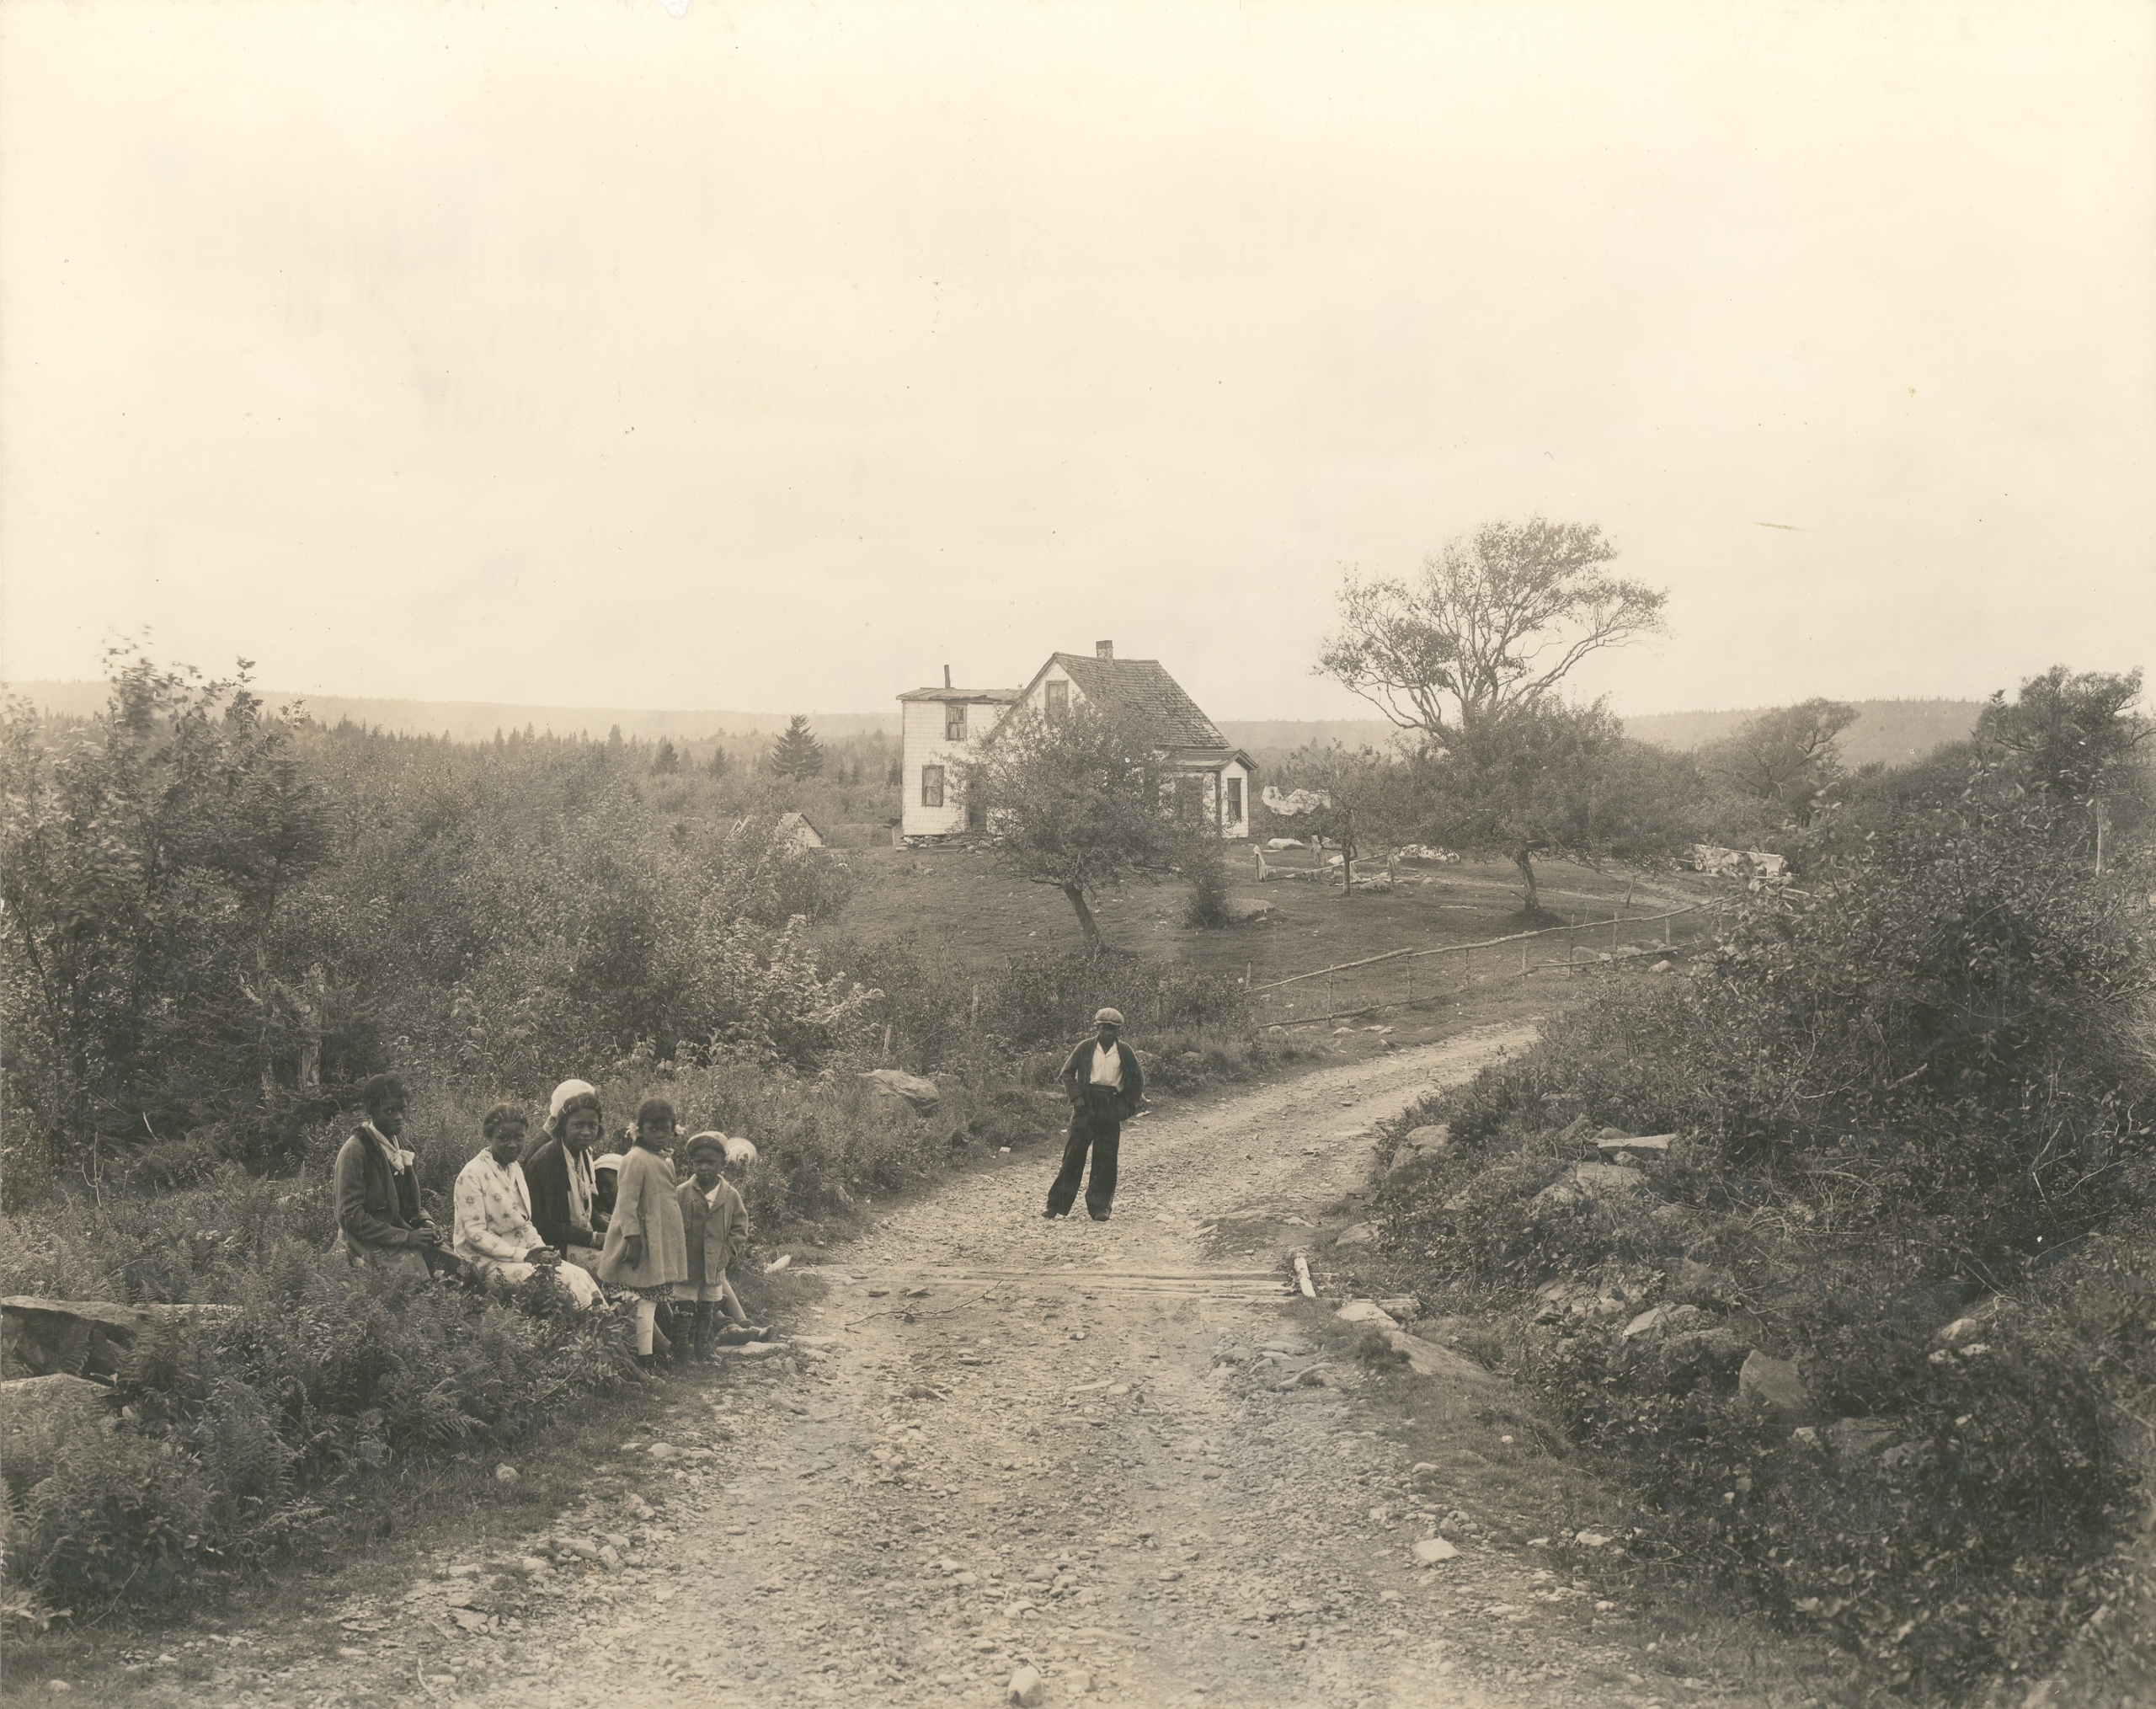 A group of children on a dirt road, with a building in the background. Un groupe d’enfants sur un chemin de terre, avec un bâtiment à l’arrière-plan.